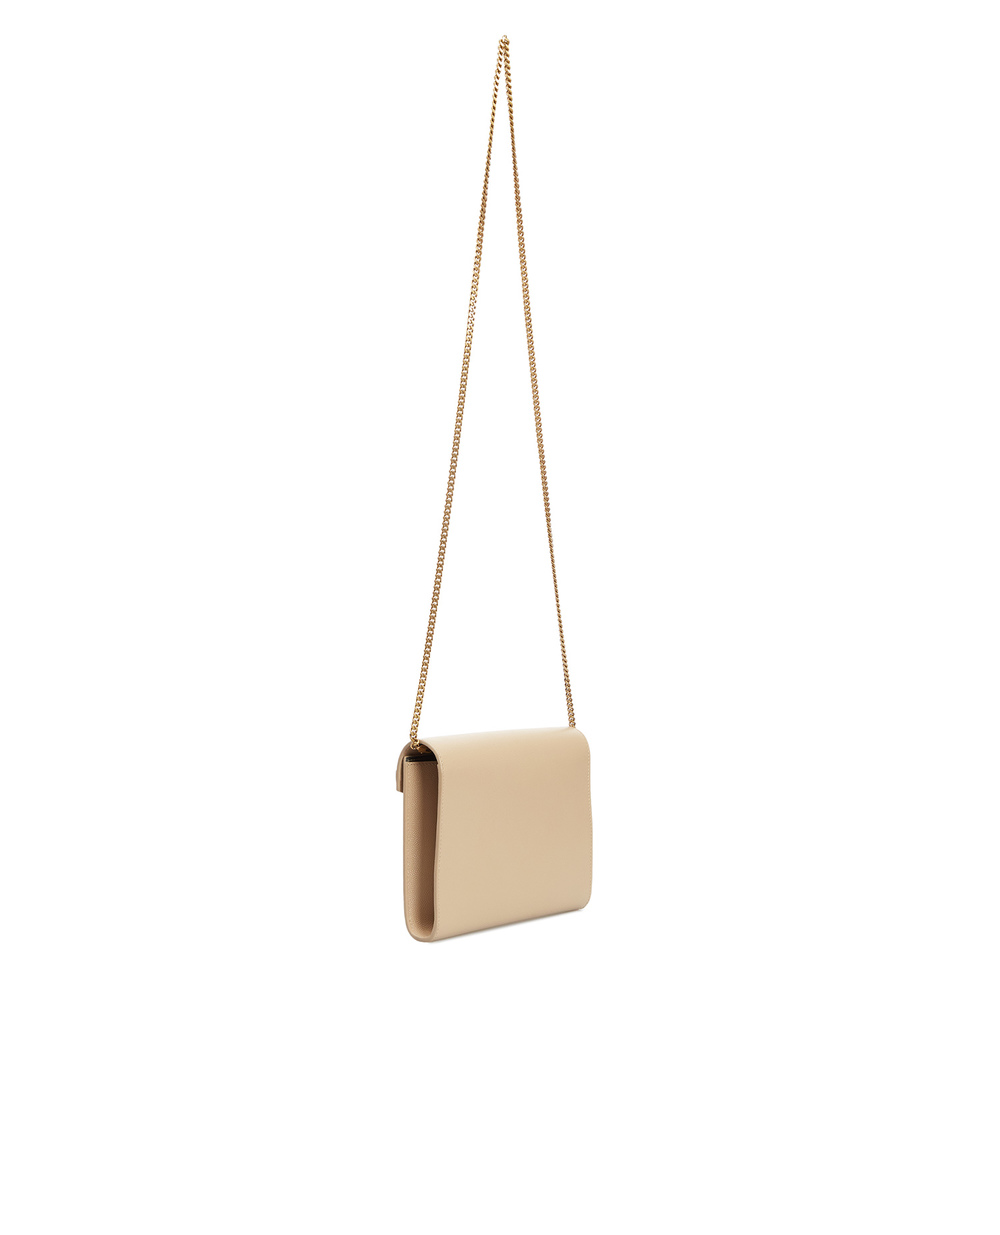 Кожаная сумка Bowaw Cassandra Saint Laurent 635023-BOWAW, бежевый цвет • Купить в интернет-магазине Kameron